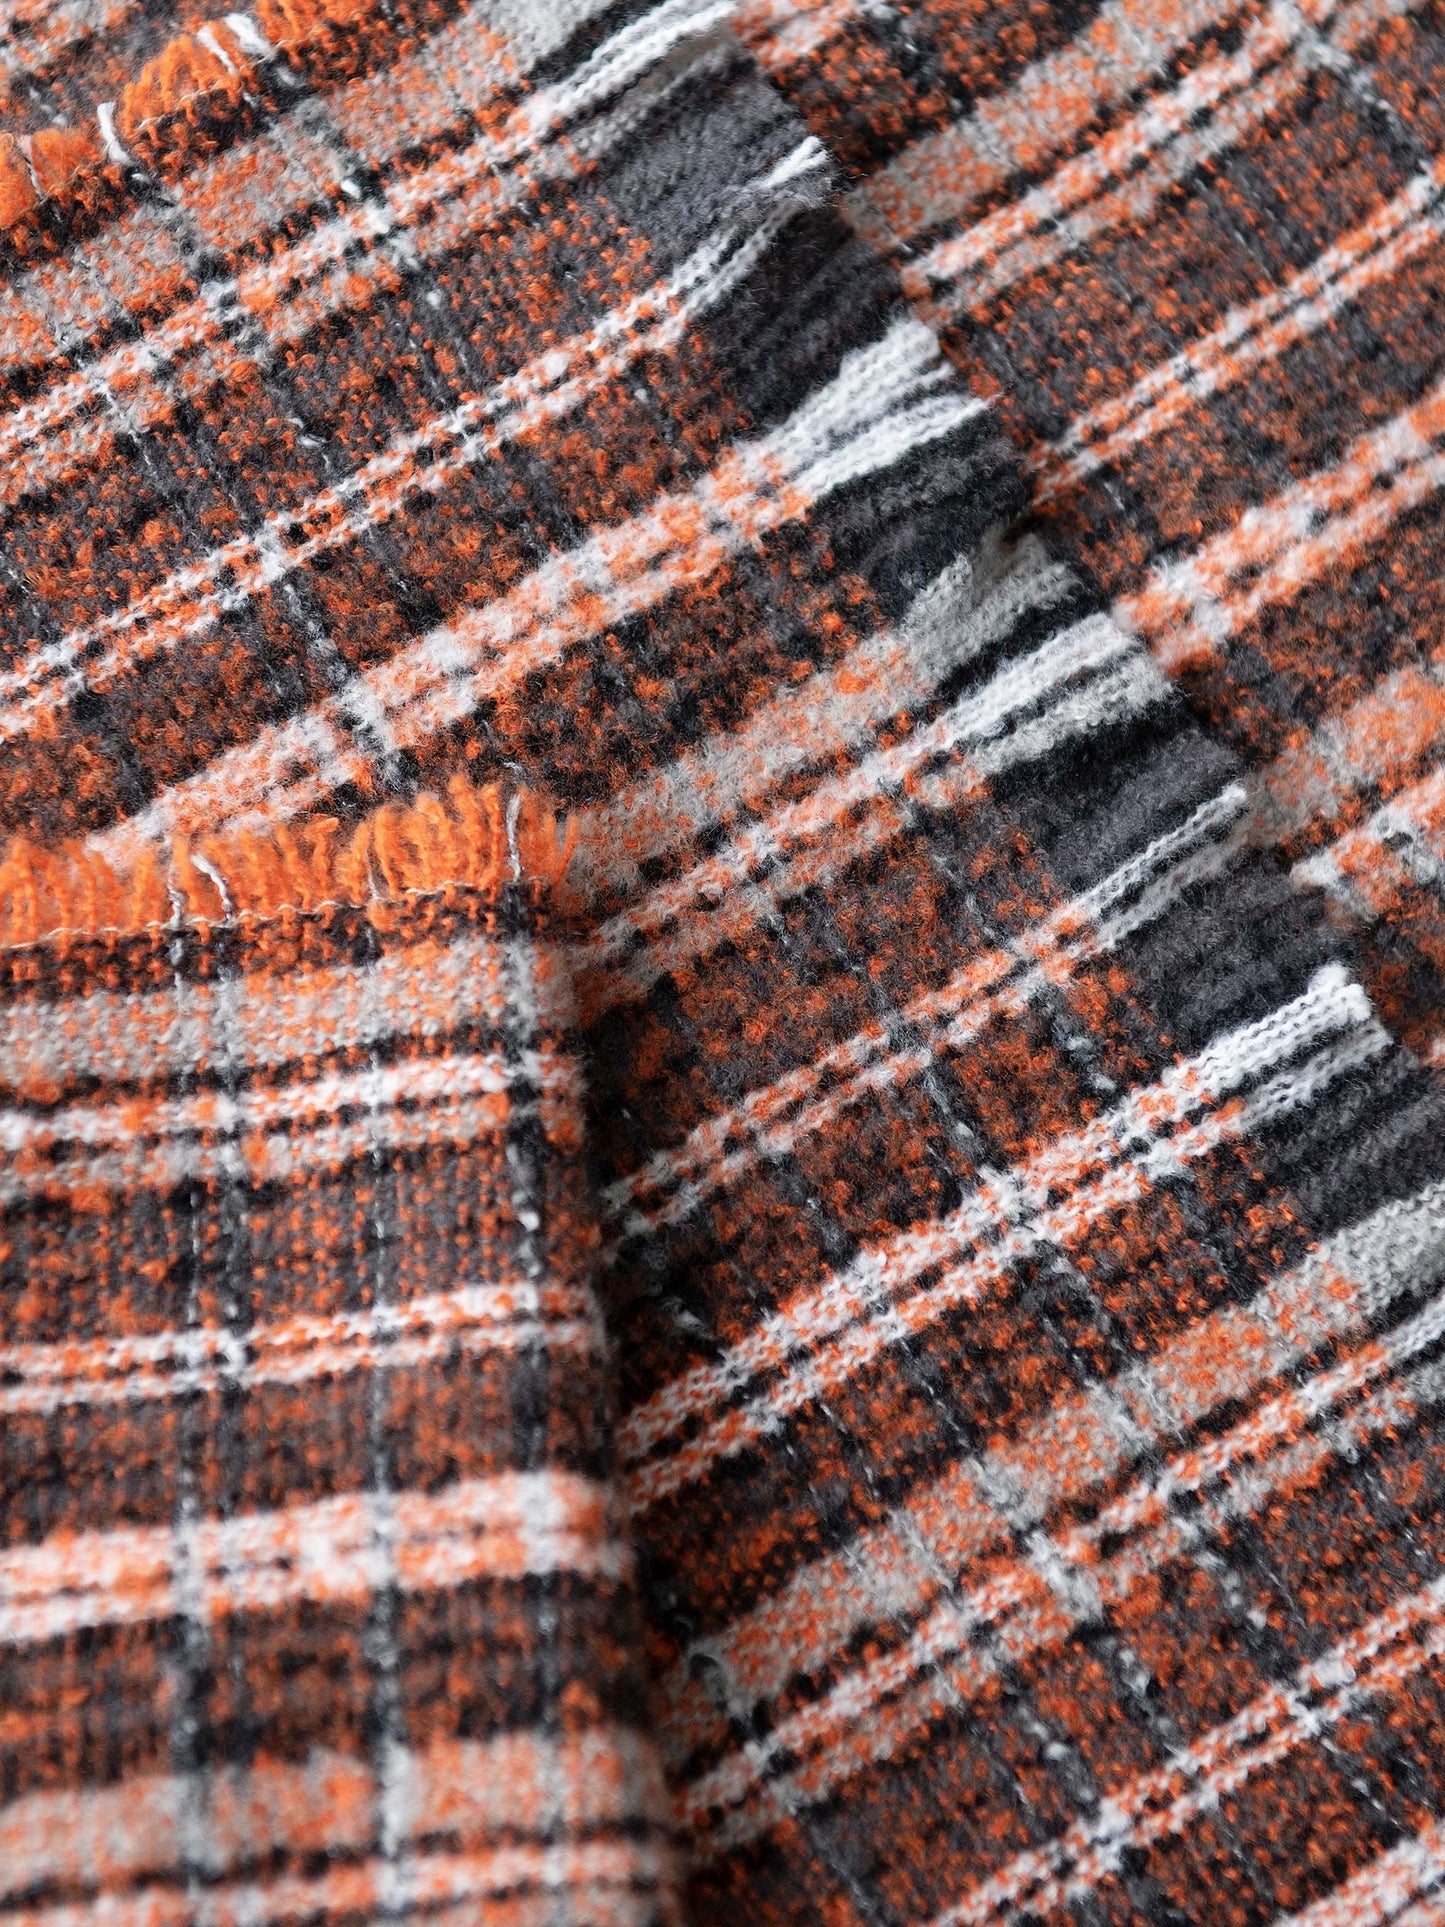 Striped Textured Wool Shawl